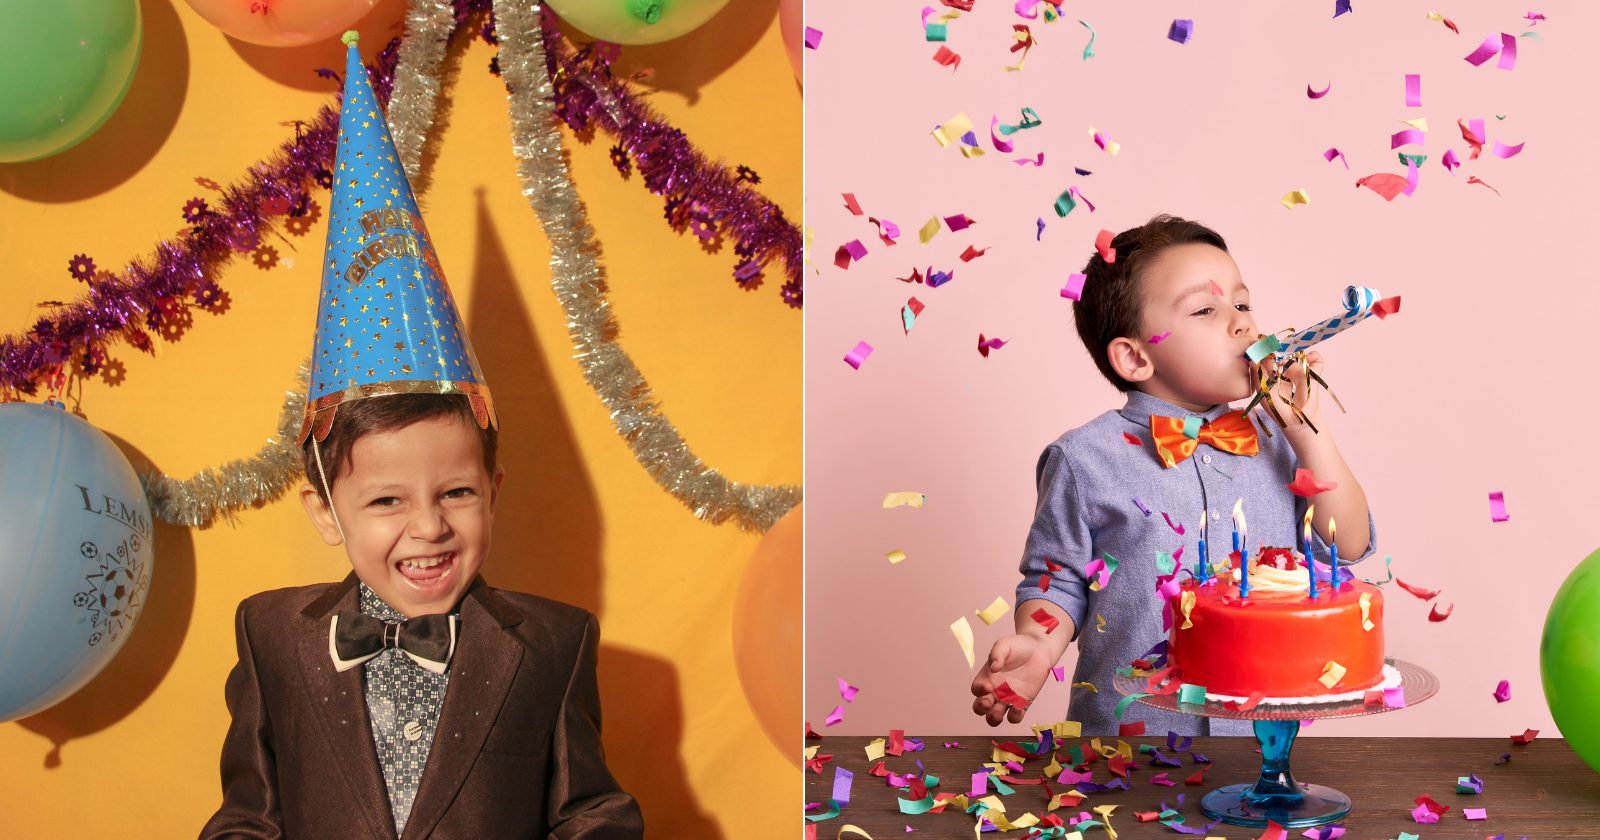 119 frases para convite de aniversário infantil que são cheias de carinho